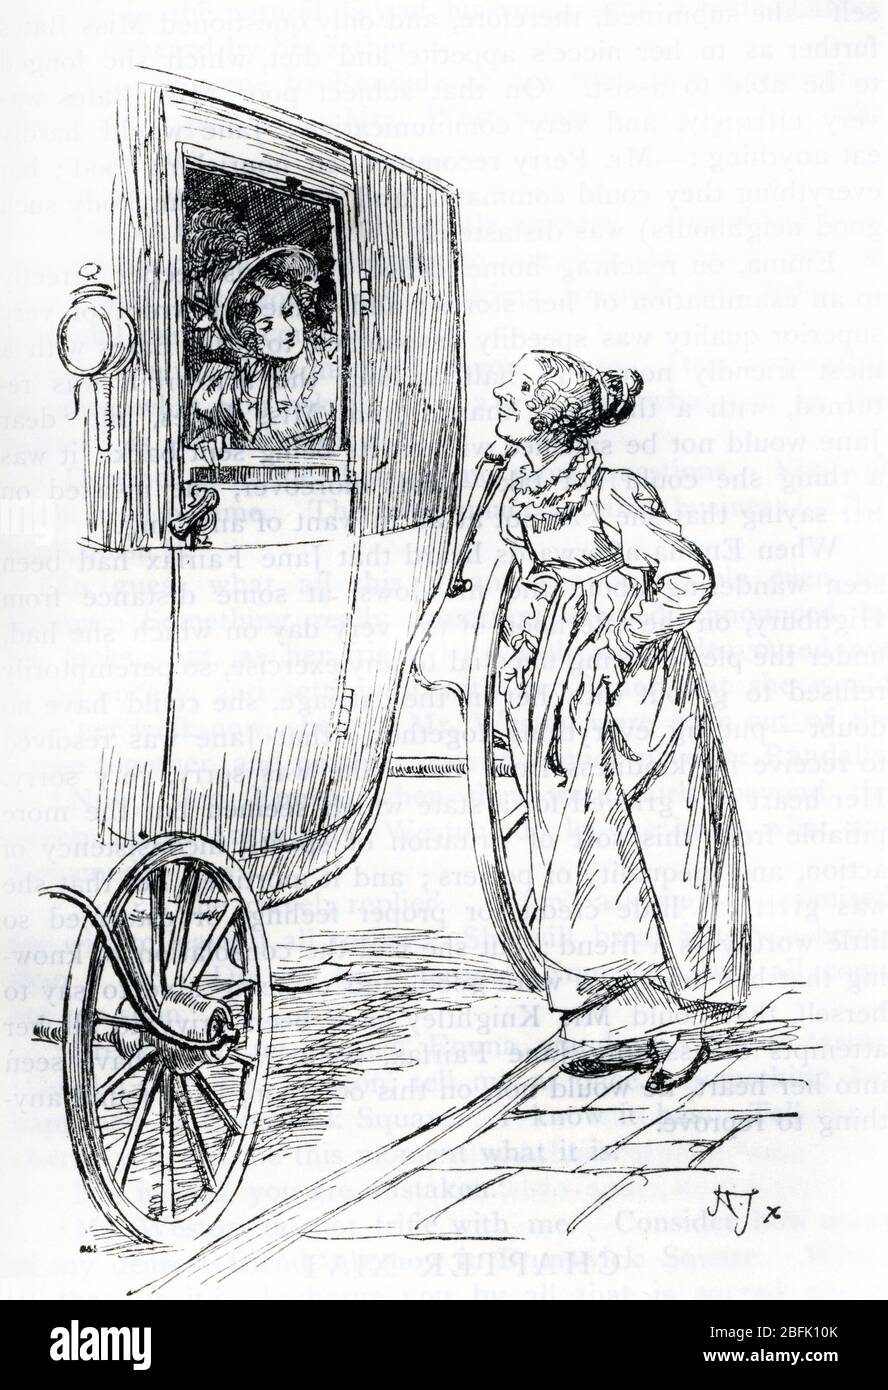 Eseration de Hugh Thomson (1860-1920) pour 'Emma' de Jane Austen (Illustrazione di Hugh Thomson del romanzo 'Emma' di Jane Aus Foto Stock